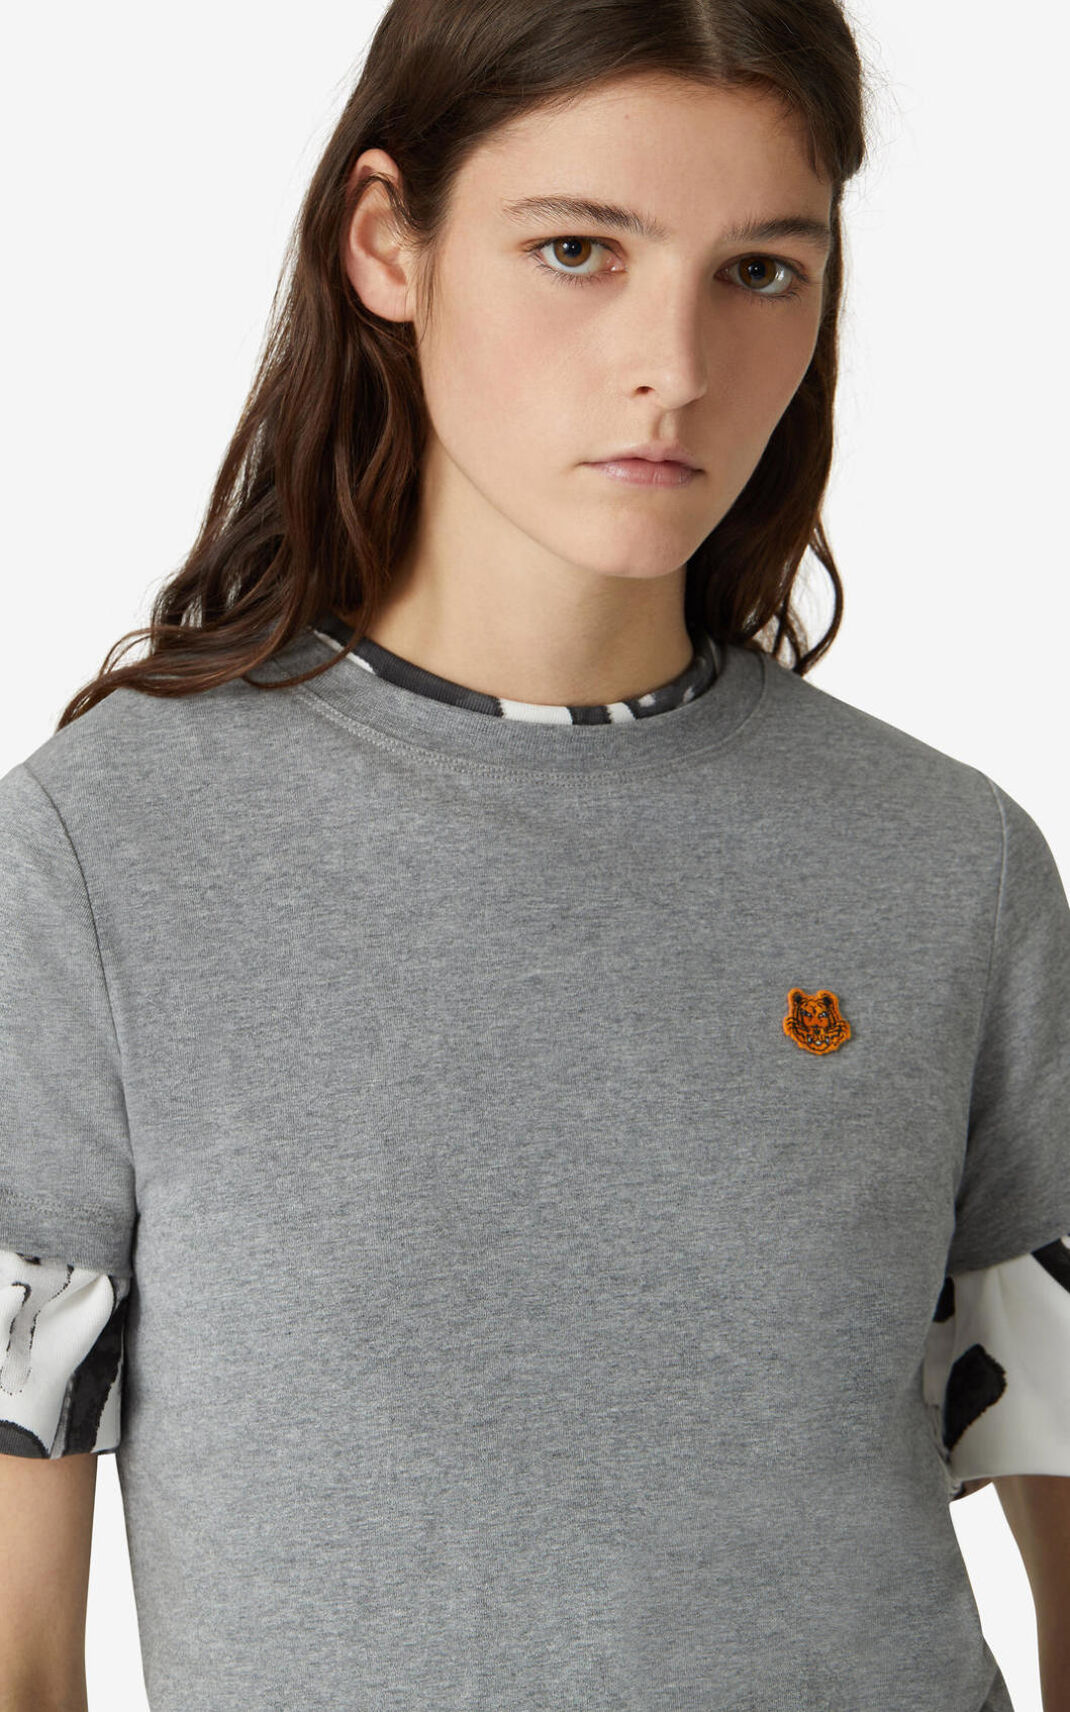 Kenzo Tiger Crest T Shirt Grey For Womens 1726ARWVO